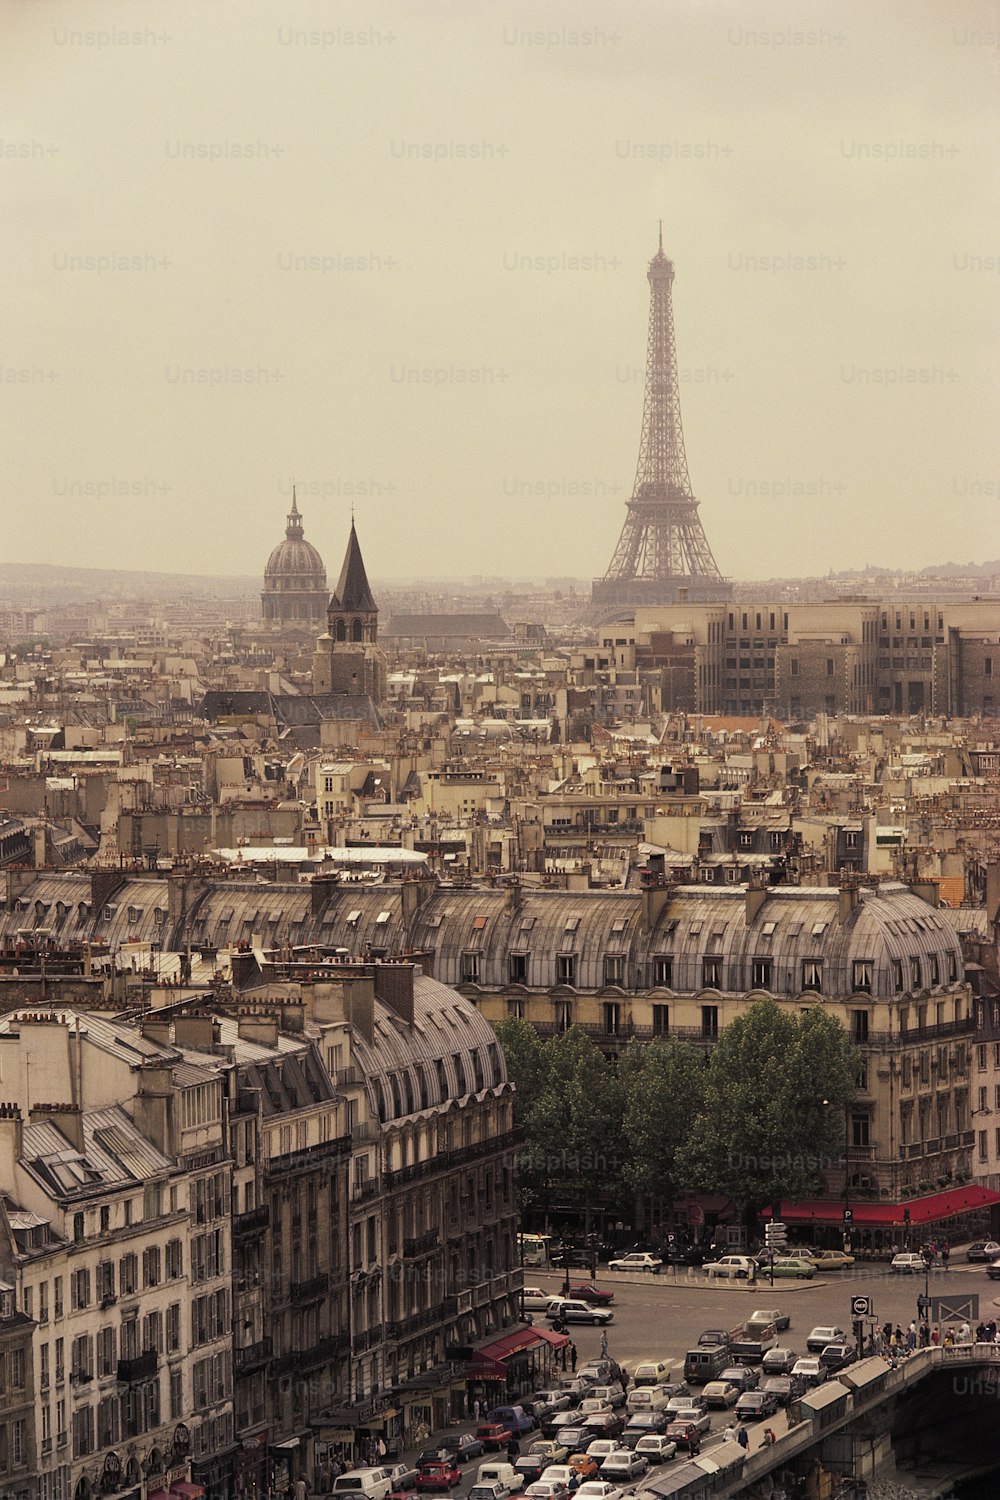 Una vista de la Torre Eiffel desde lo alto de un edificio